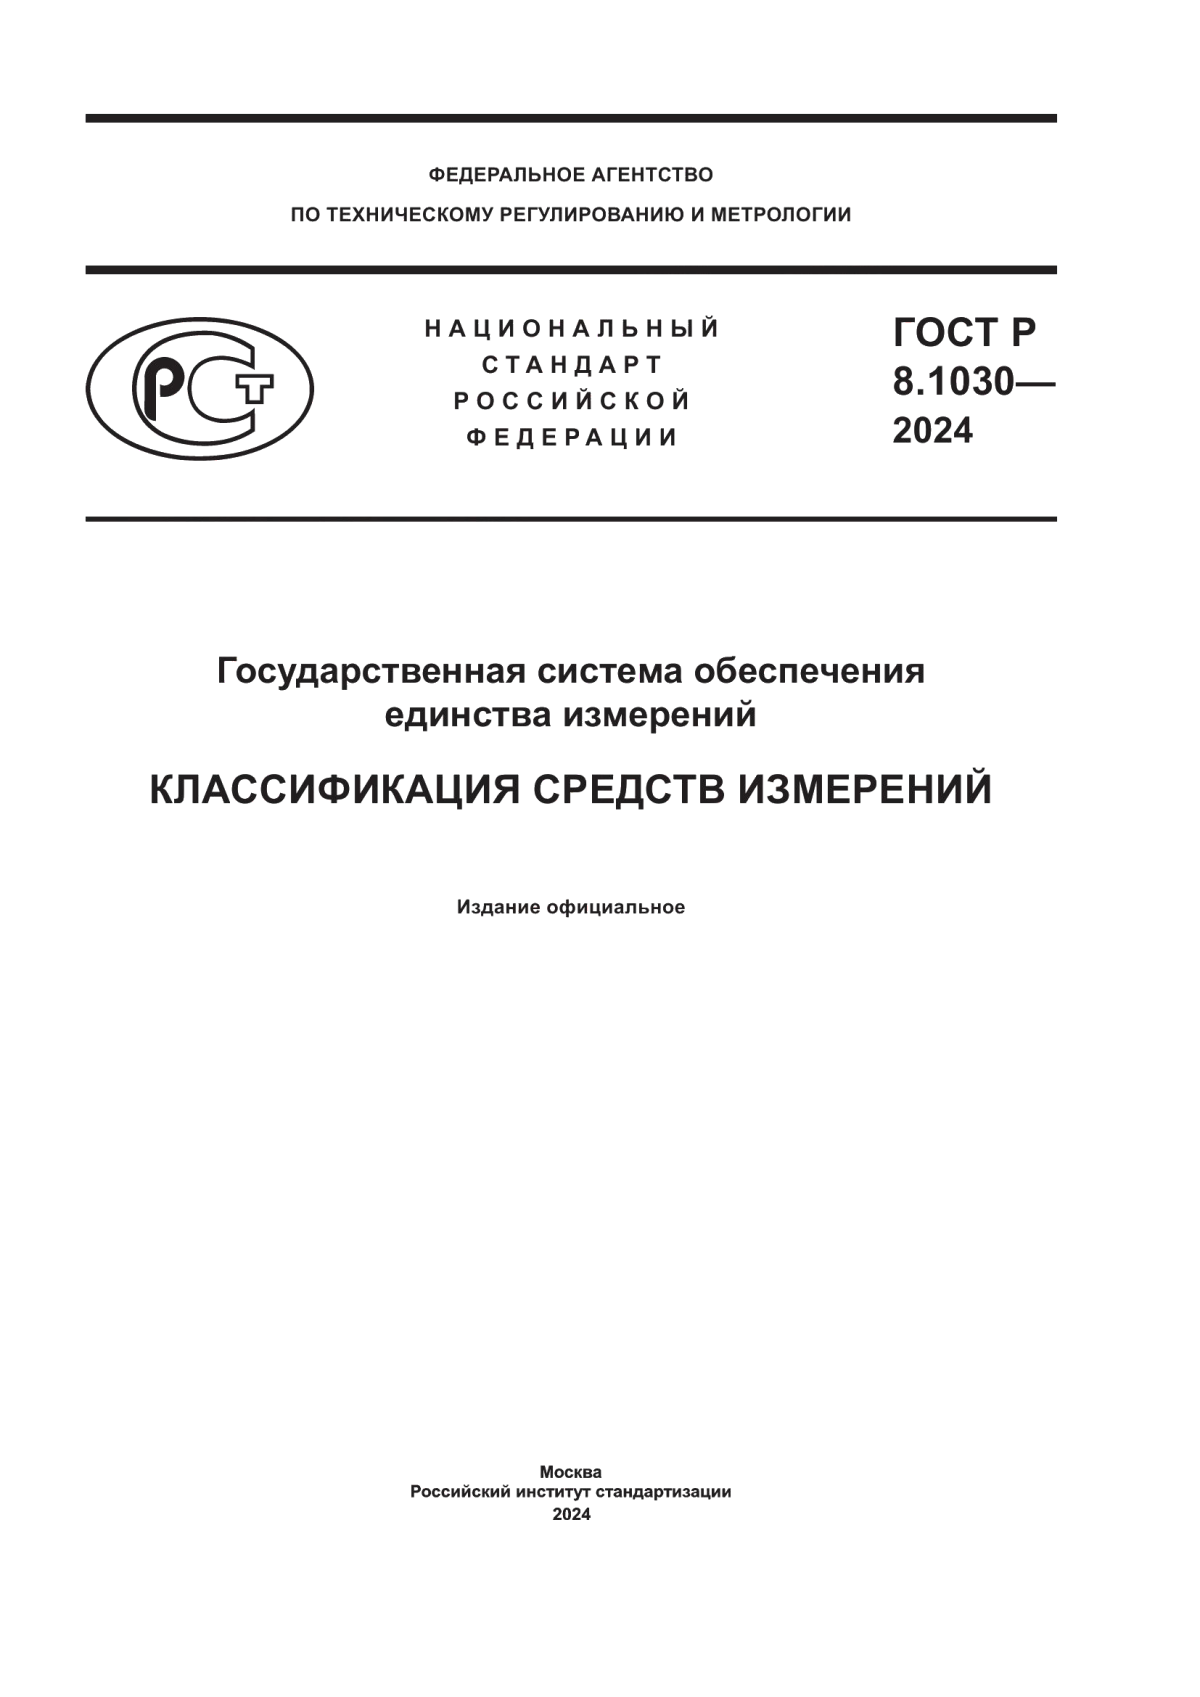 ГОСТ Р 8.1030-2024 Государственная система обеспечения единства измерений. Классификация средств измерений